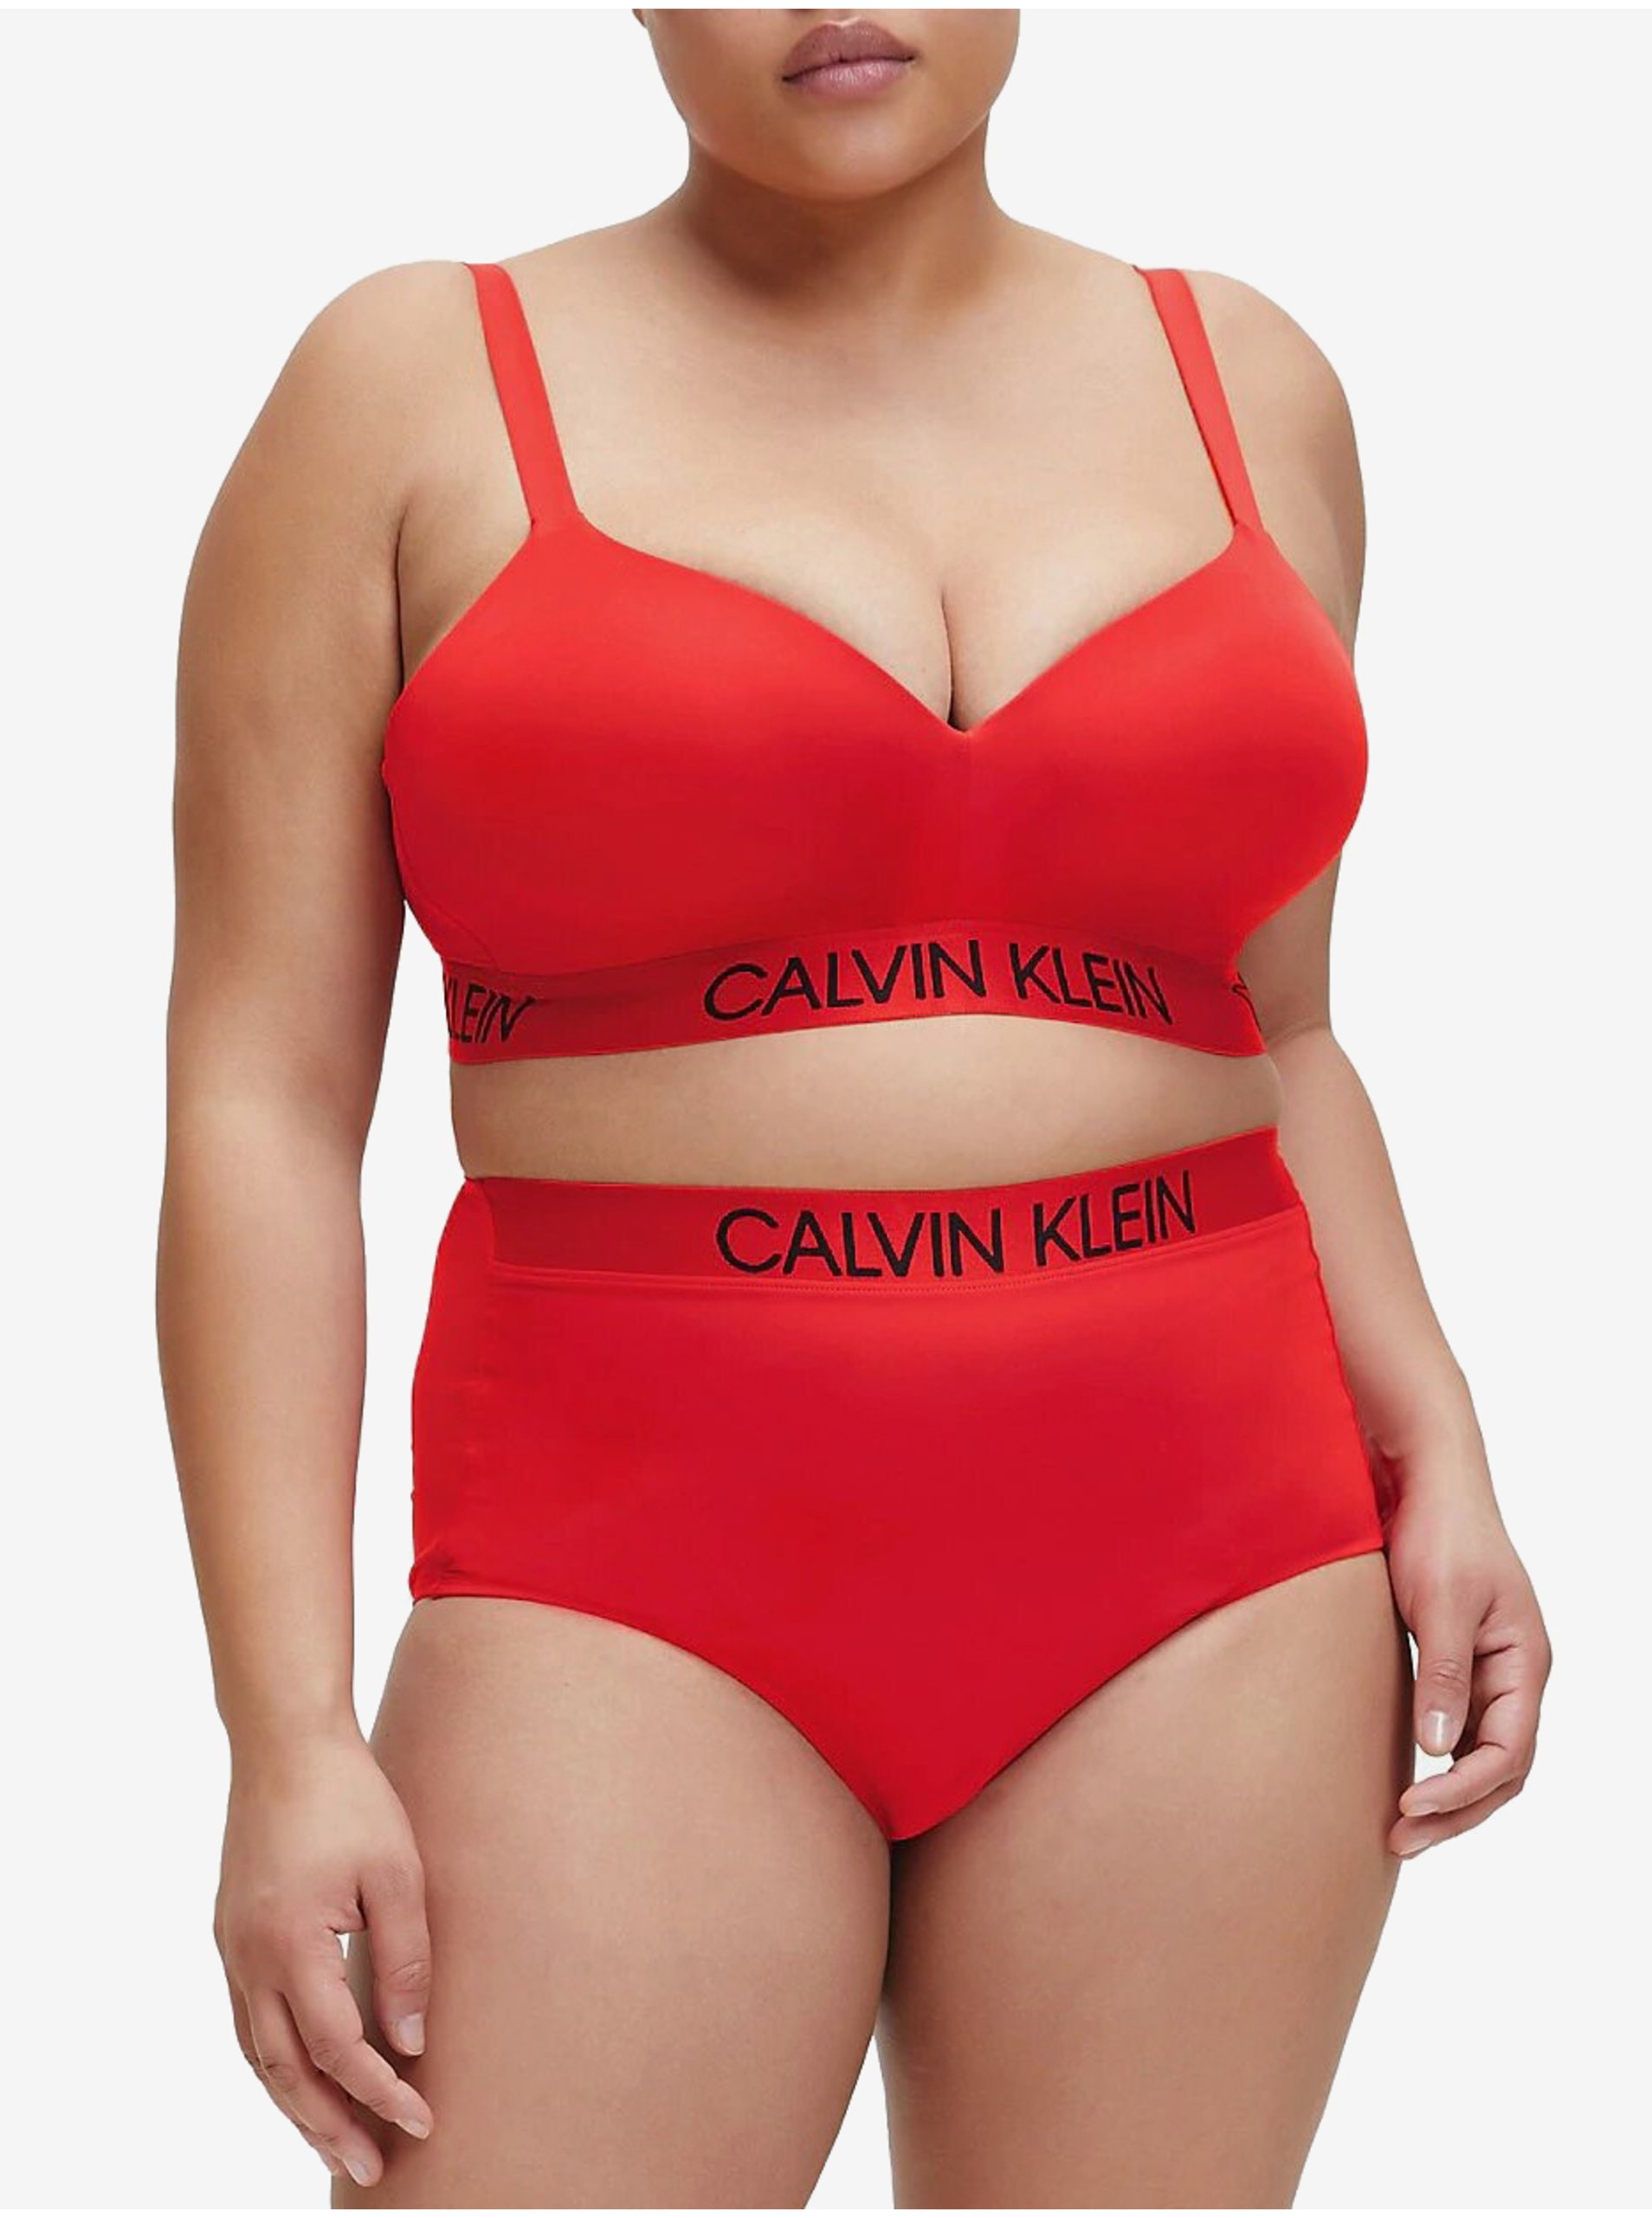 Lacno Calvin Klein červený horný diel plaviek Demi Bralette Plus Size High Risk Red